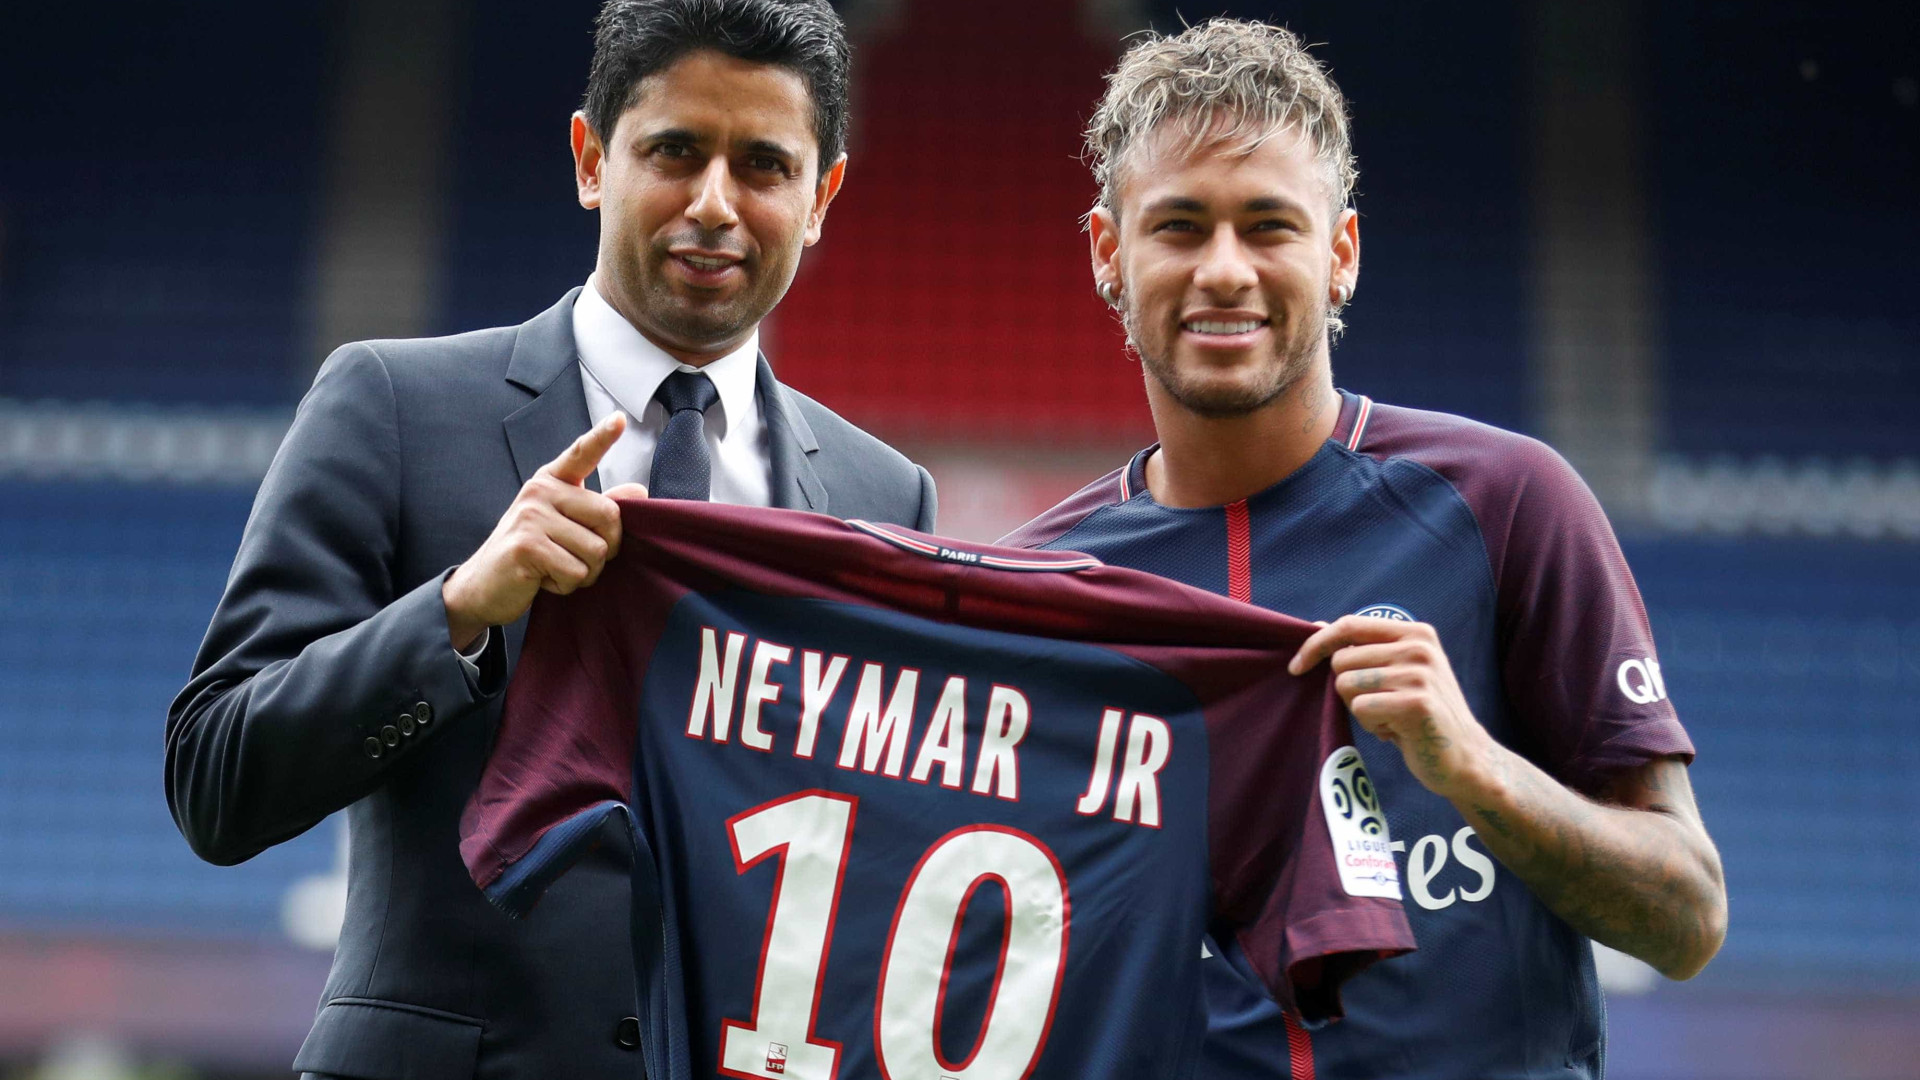 Sindicato pede investigação e diz que venda de Neymar é ilegal